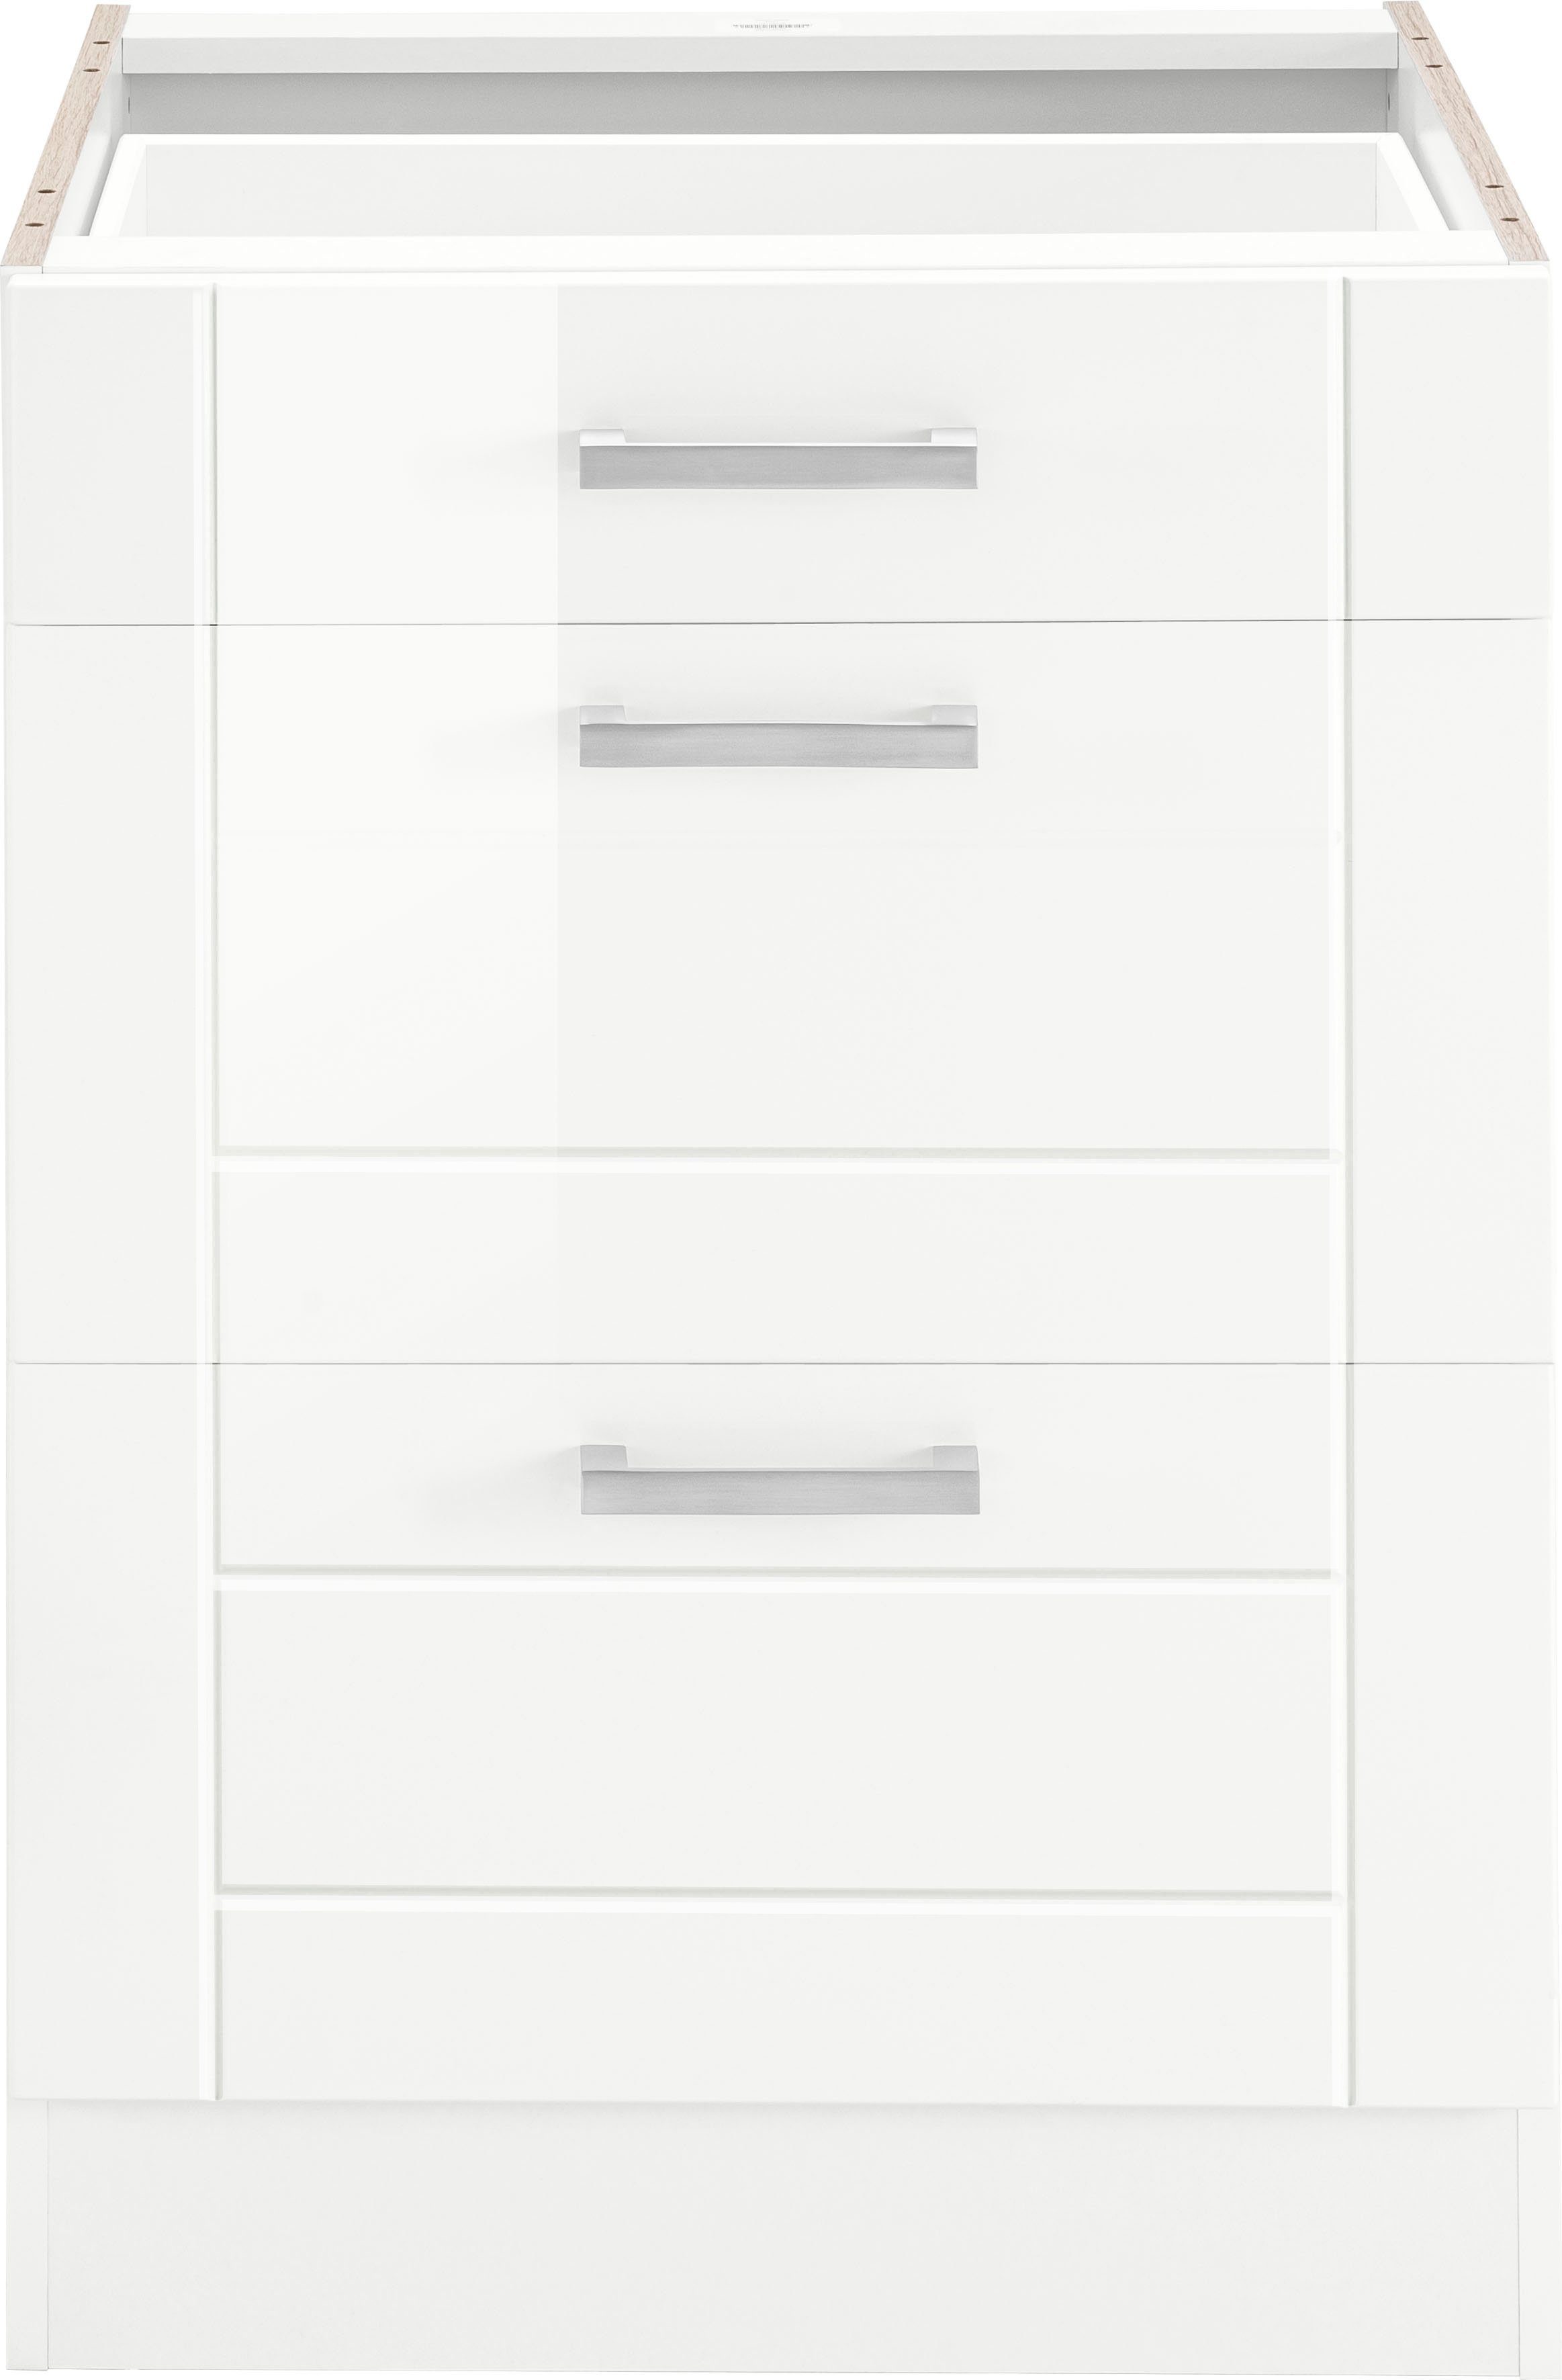 HELD MÖBEL Auszugsunterschrank Tinnum 60 cm breit, MDF-Fronten, Metallgriff, 1 Schubkasten, 2 Auszüge weiß | weiß